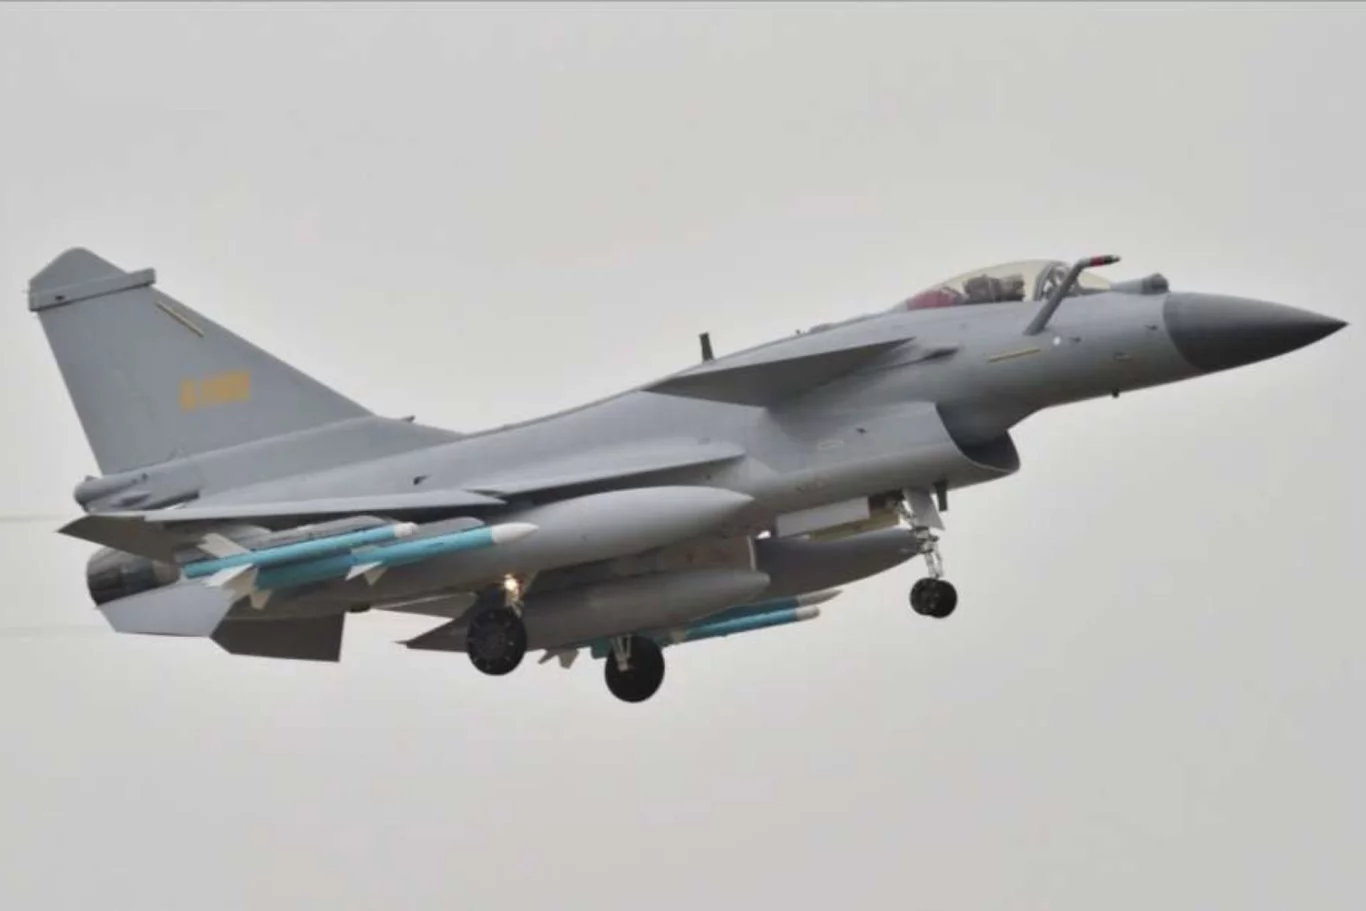 الصين تعرض على مصر مقاتلات J-10 وJ-31 كبديل للطائرات الأمريكية